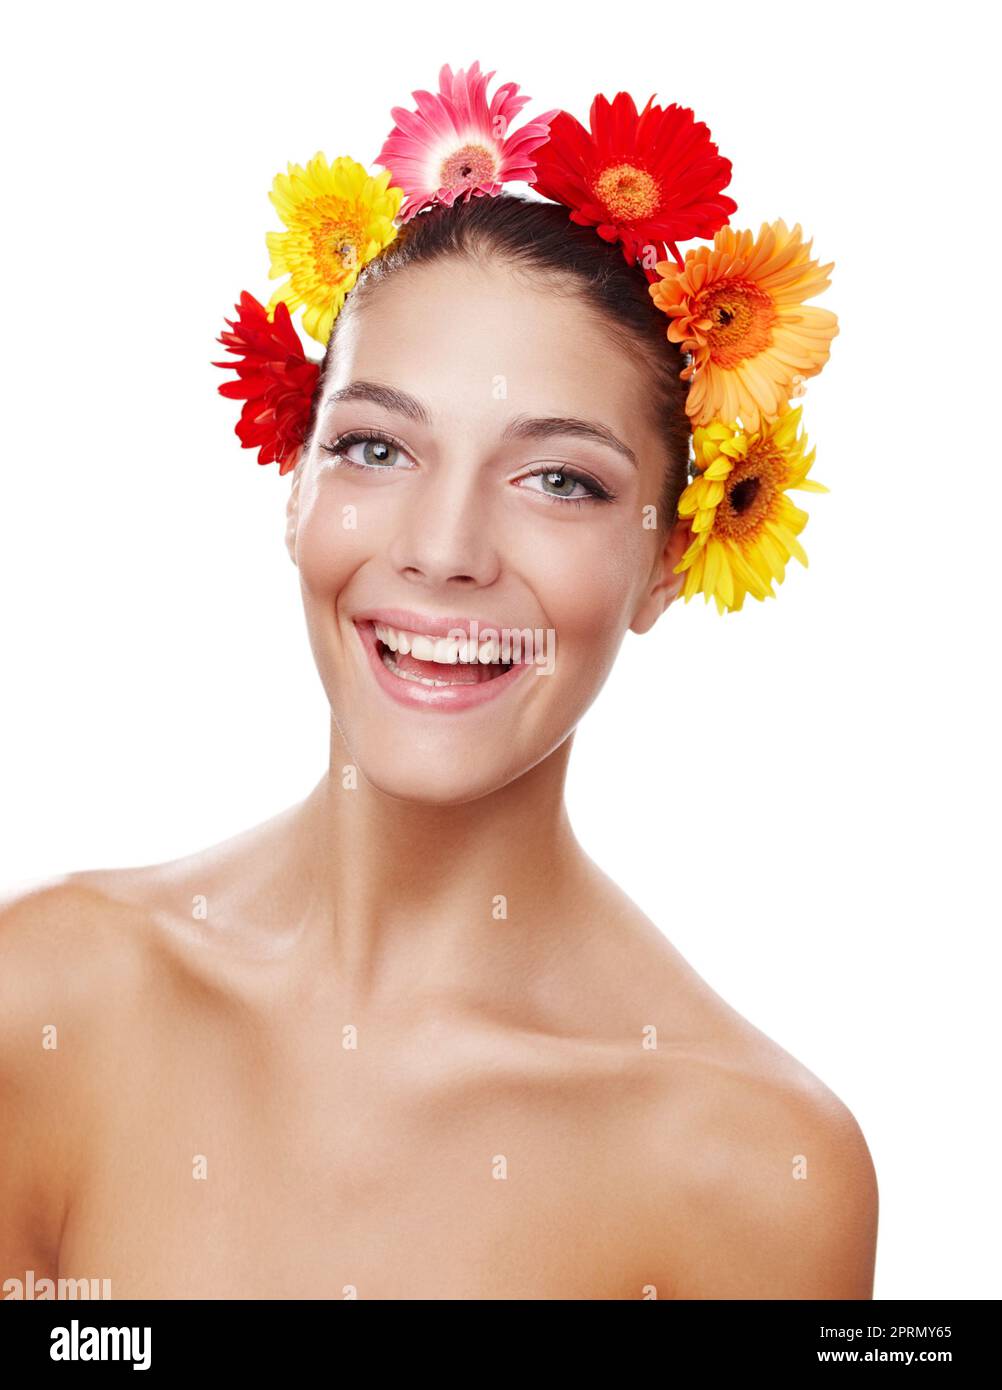 Feliz como una flor. Retrato recortado de una hermosa joven con una corona de flores. Foto de stock